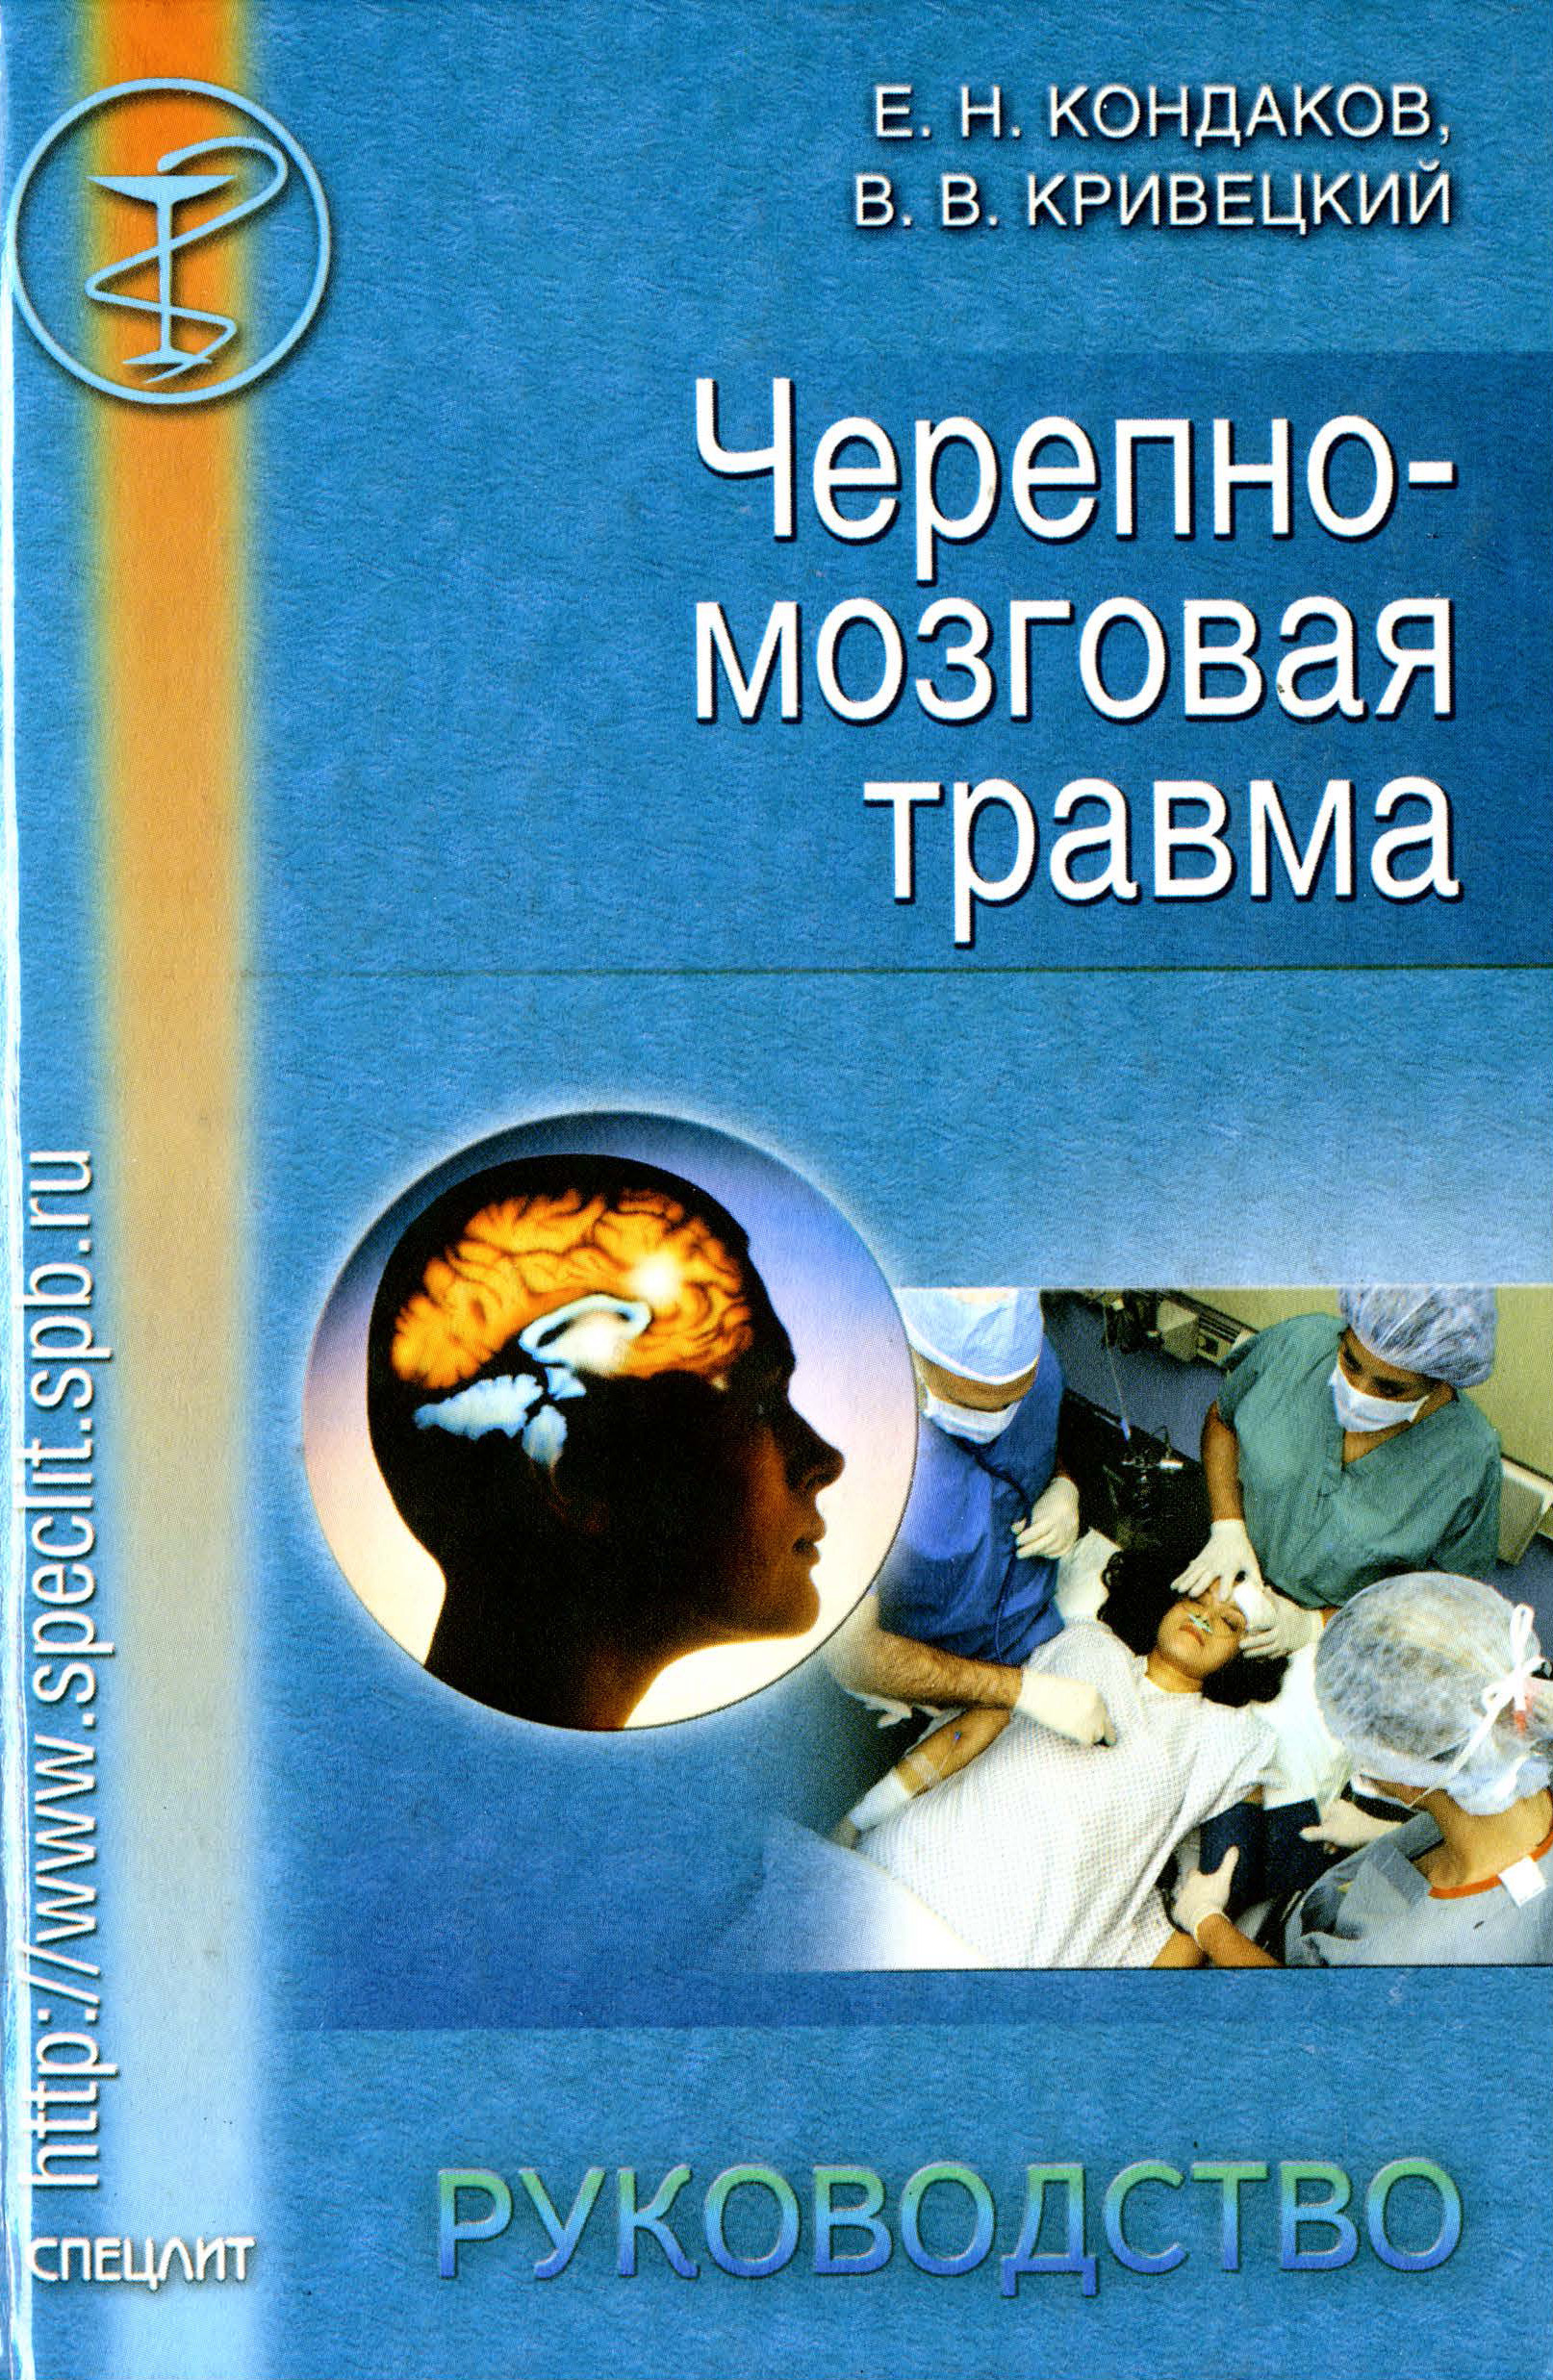 Книга Черепно-мозговая травма. Руководство из серии , созданная Валерий Кривецкий, Евгений Кондаков, может относится к жанру Медицина. Стоимость книги Черепно-мозговая травма. Руководство  с идентификатором 10244776 составляет 50.00 руб.